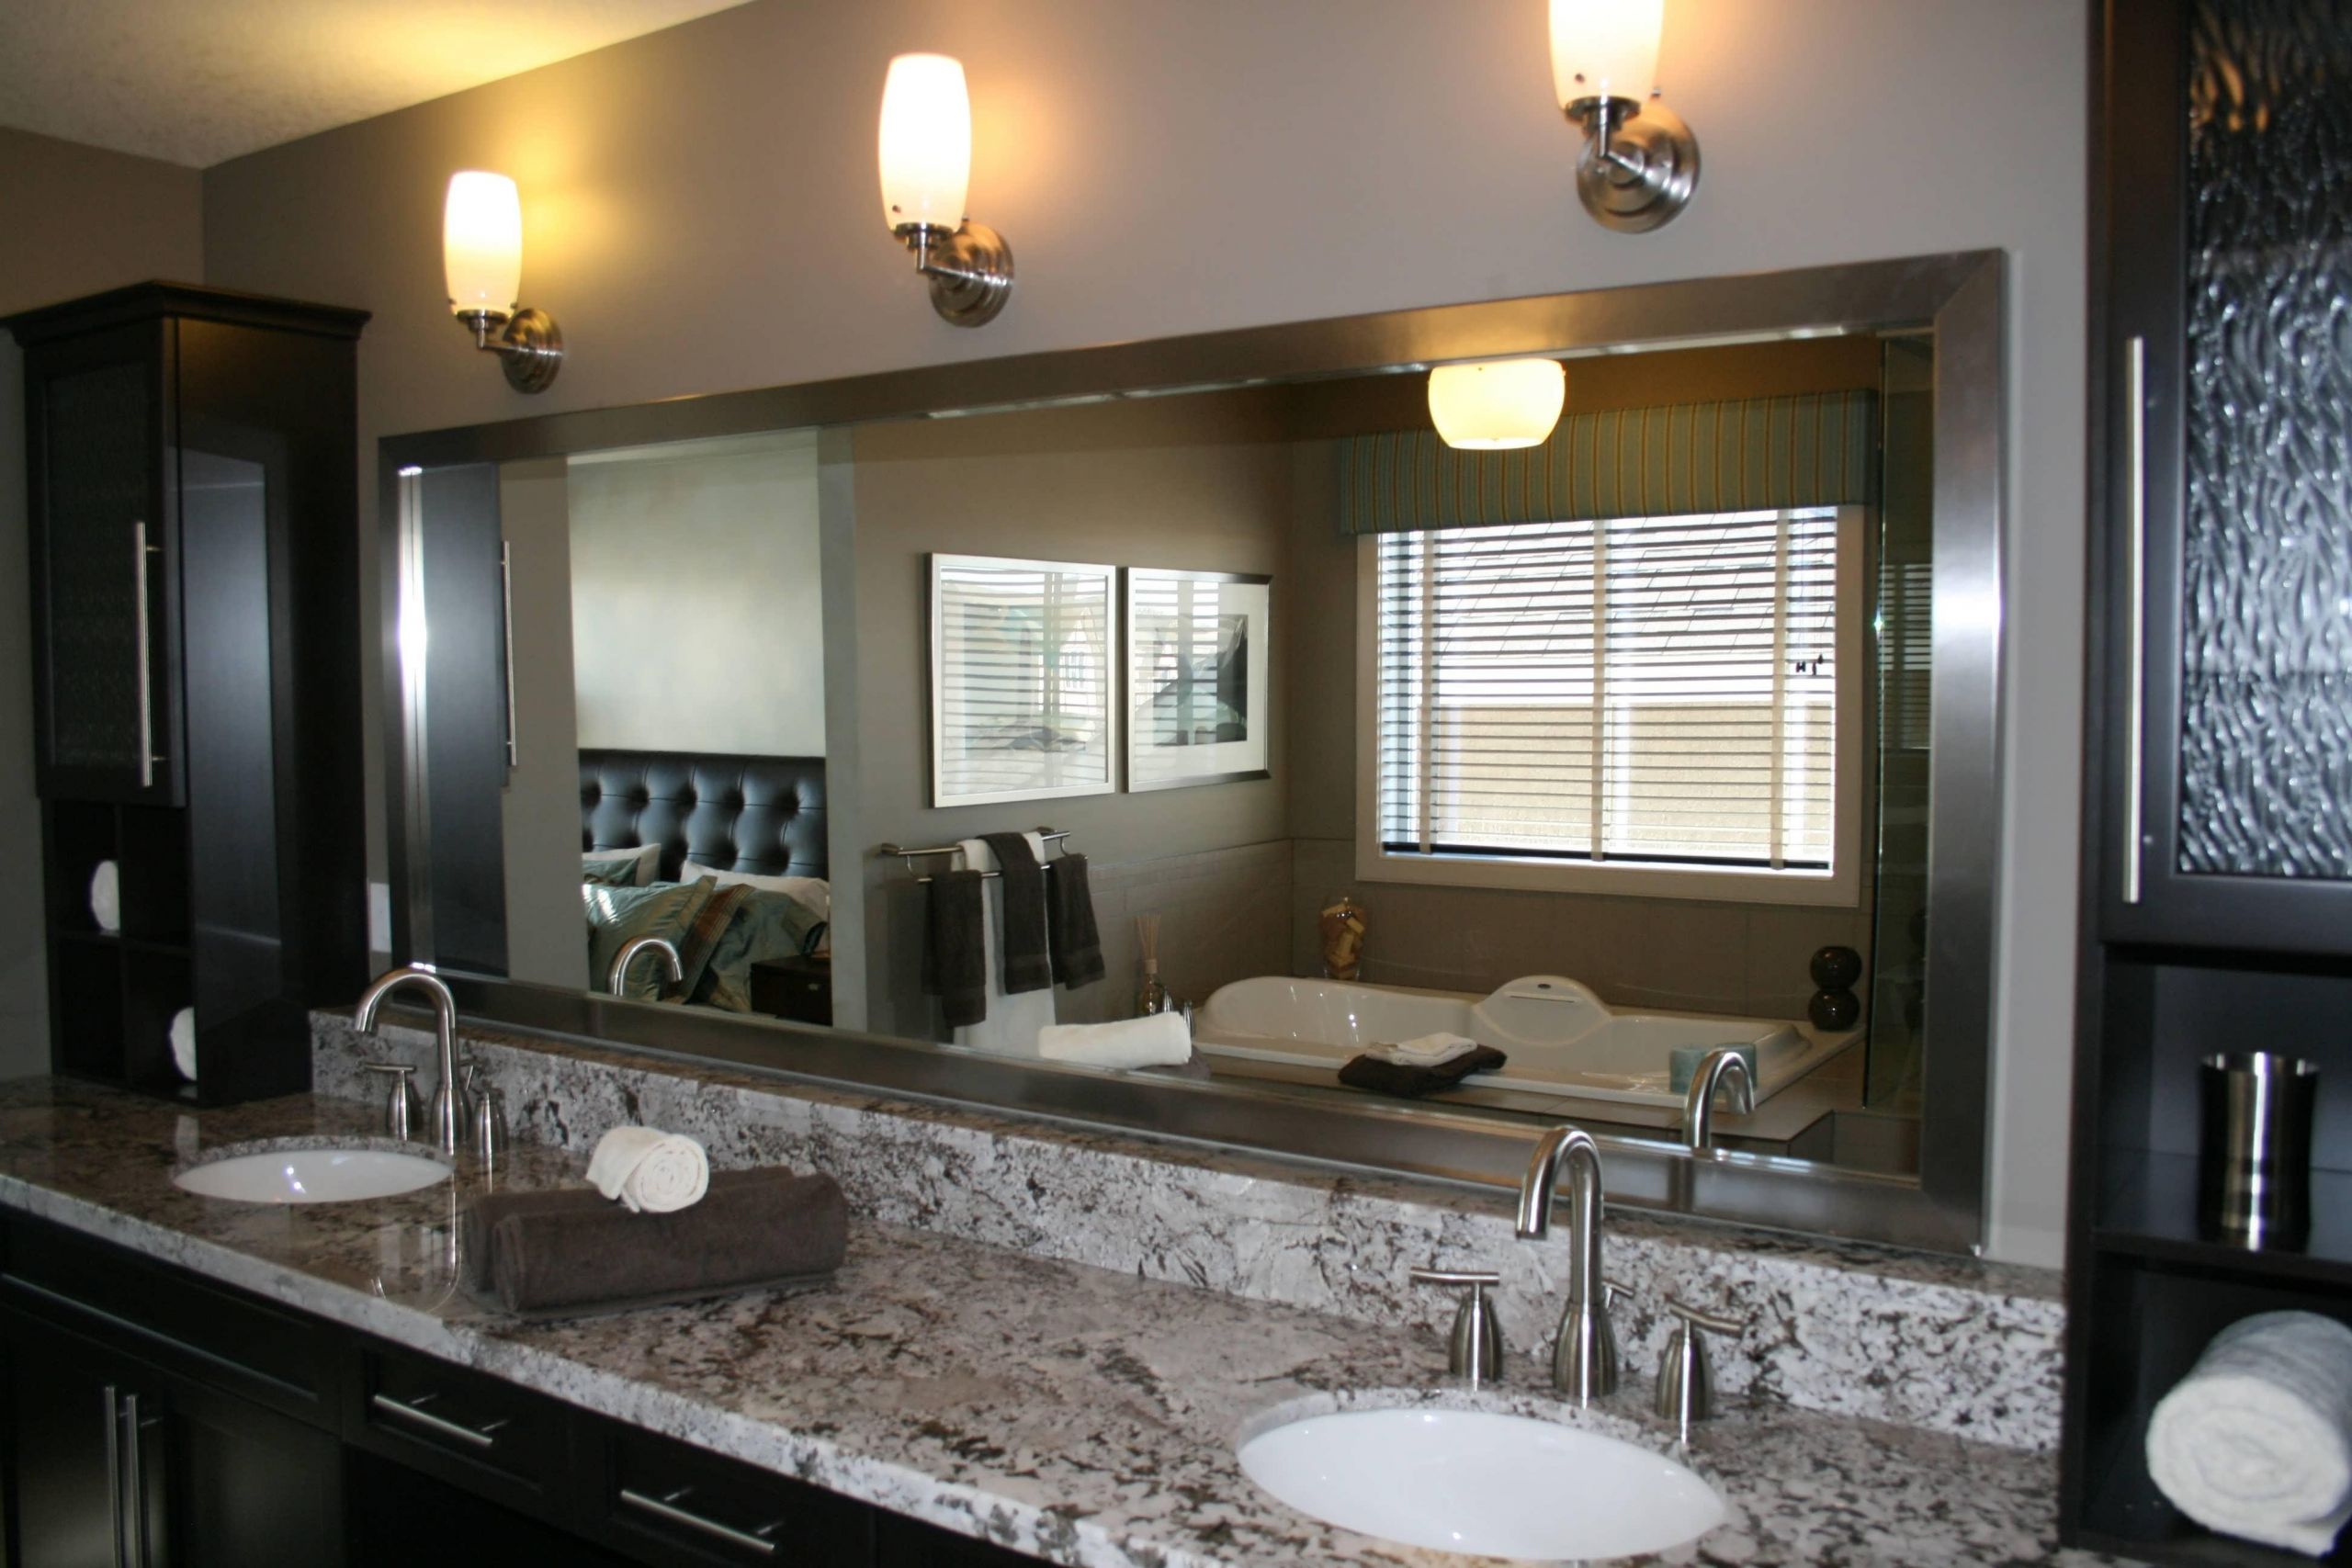 Framed Bathroom Mirror Ideas
 20 Ideas of Mirrors for Bathroom Walls